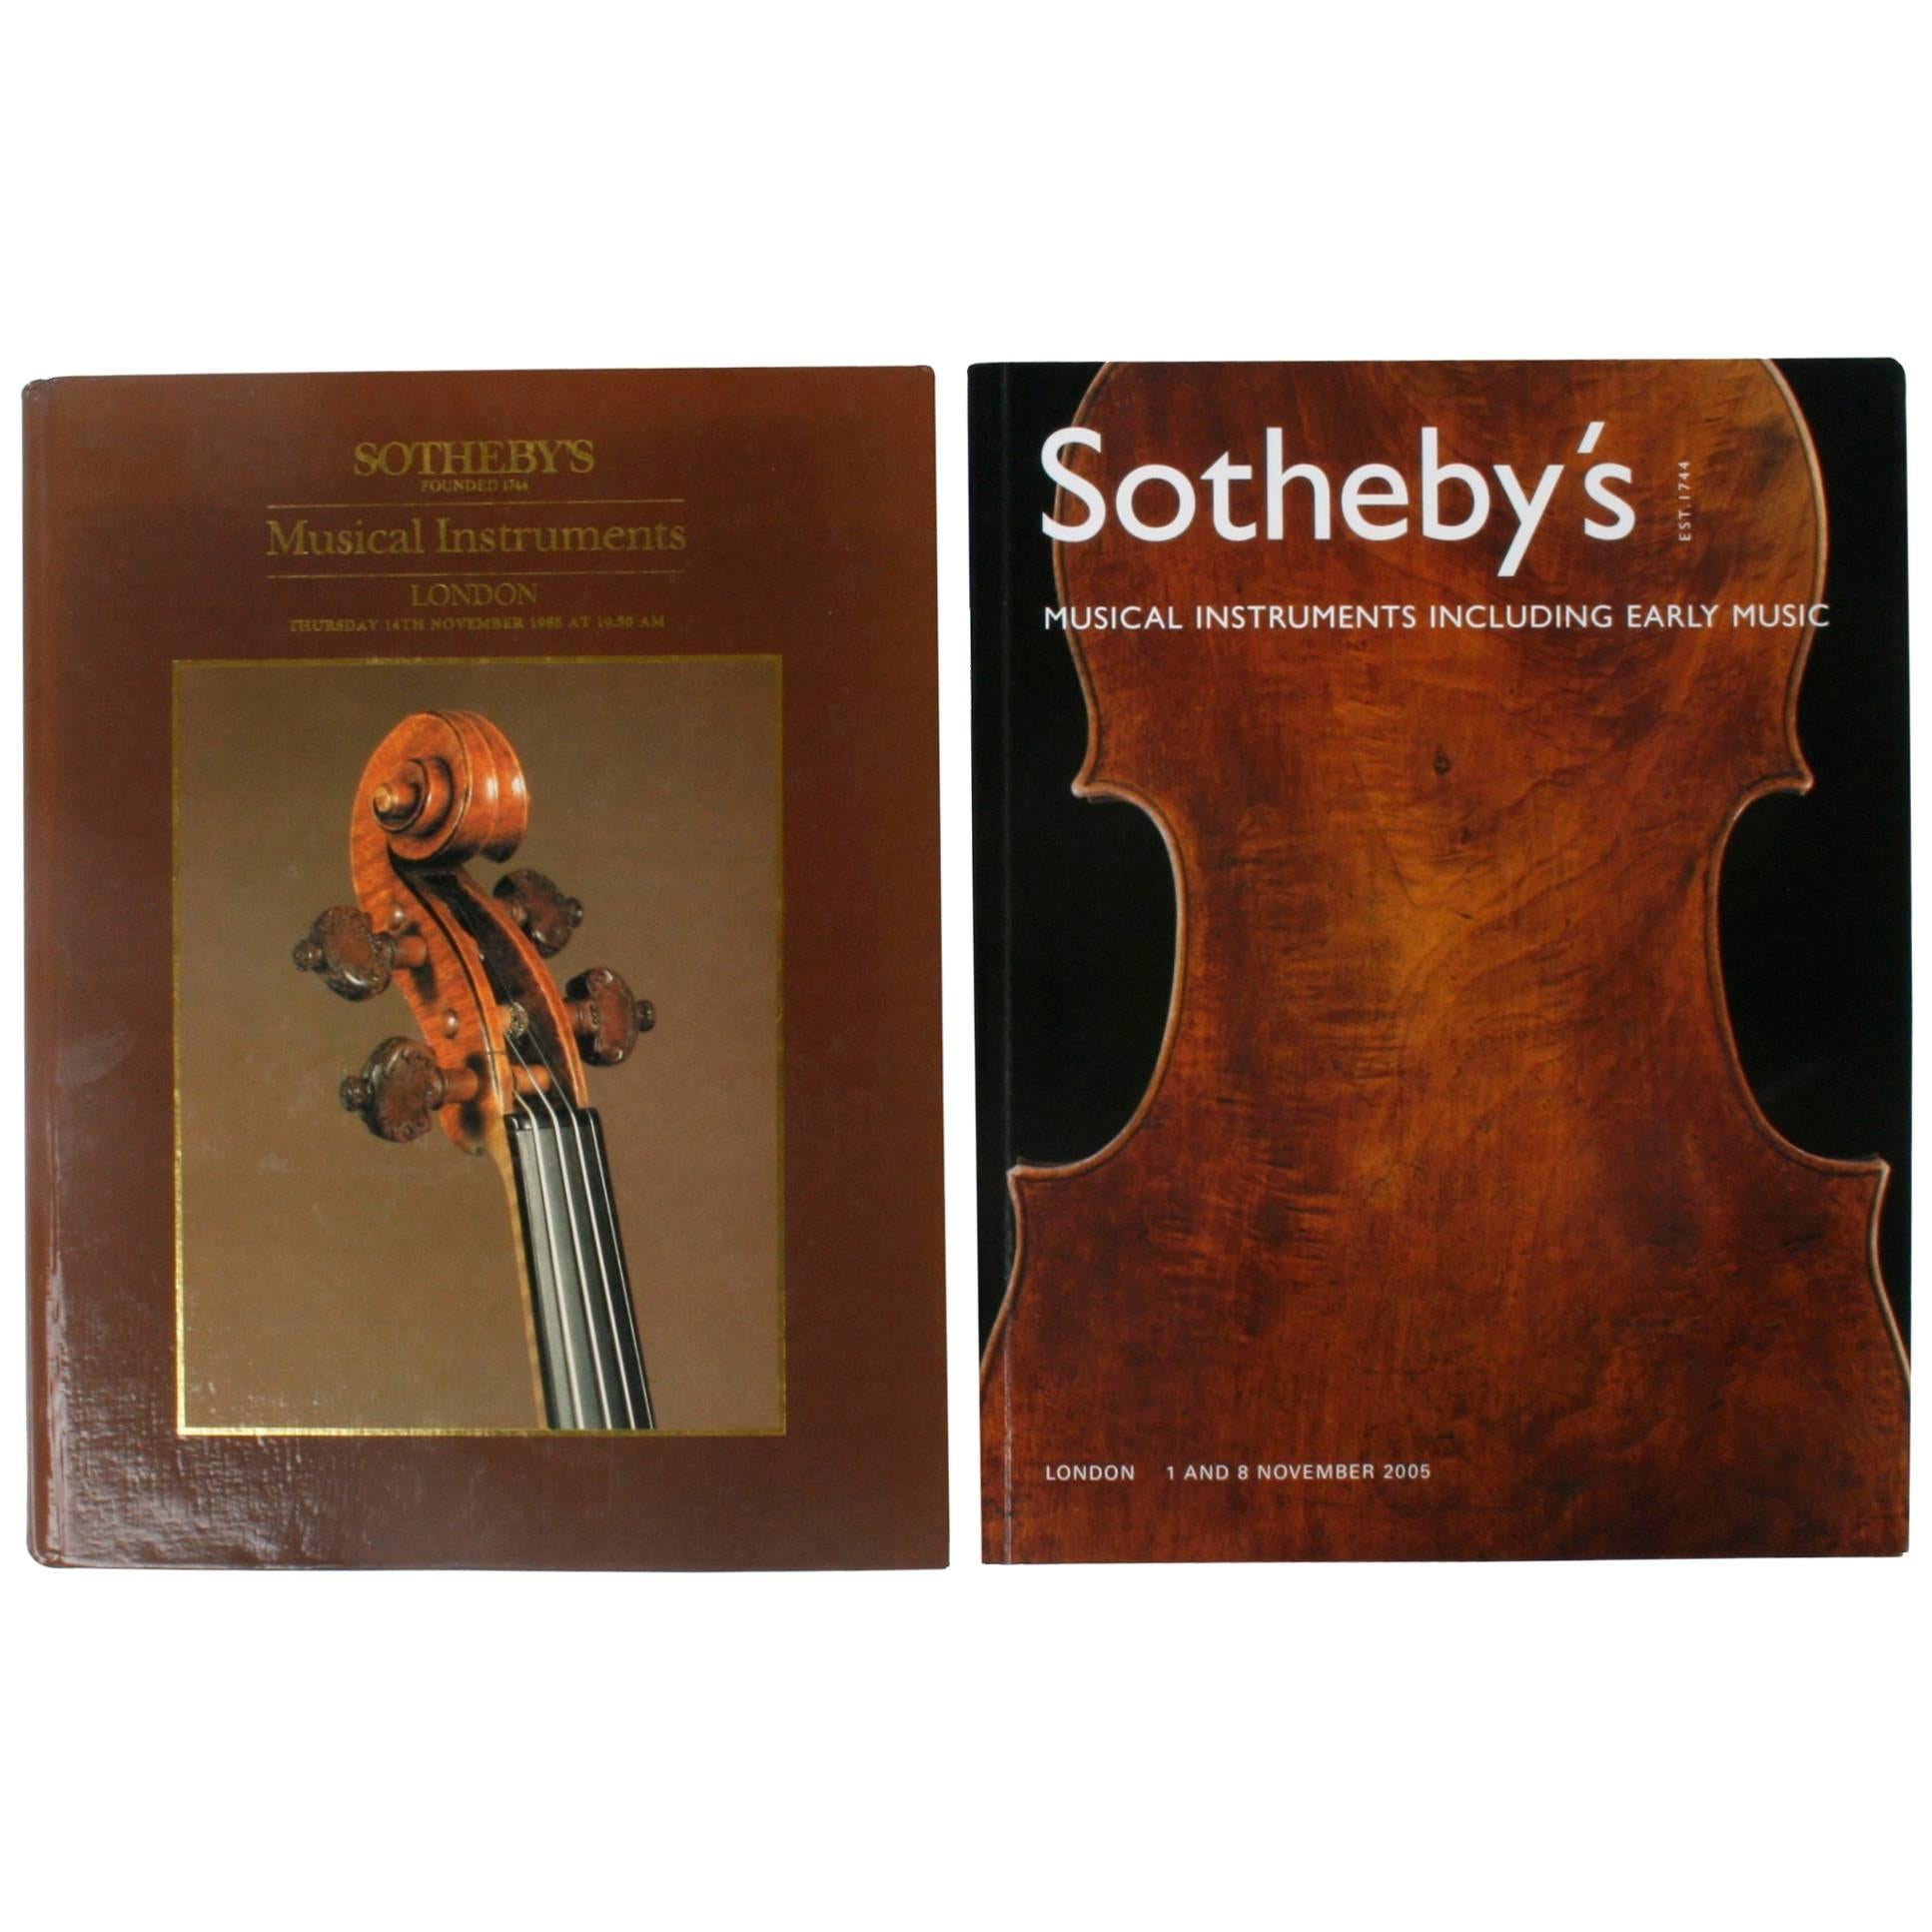 Deux catalogues de ventes aux enchères de Sotheby's London sur instruments de musique